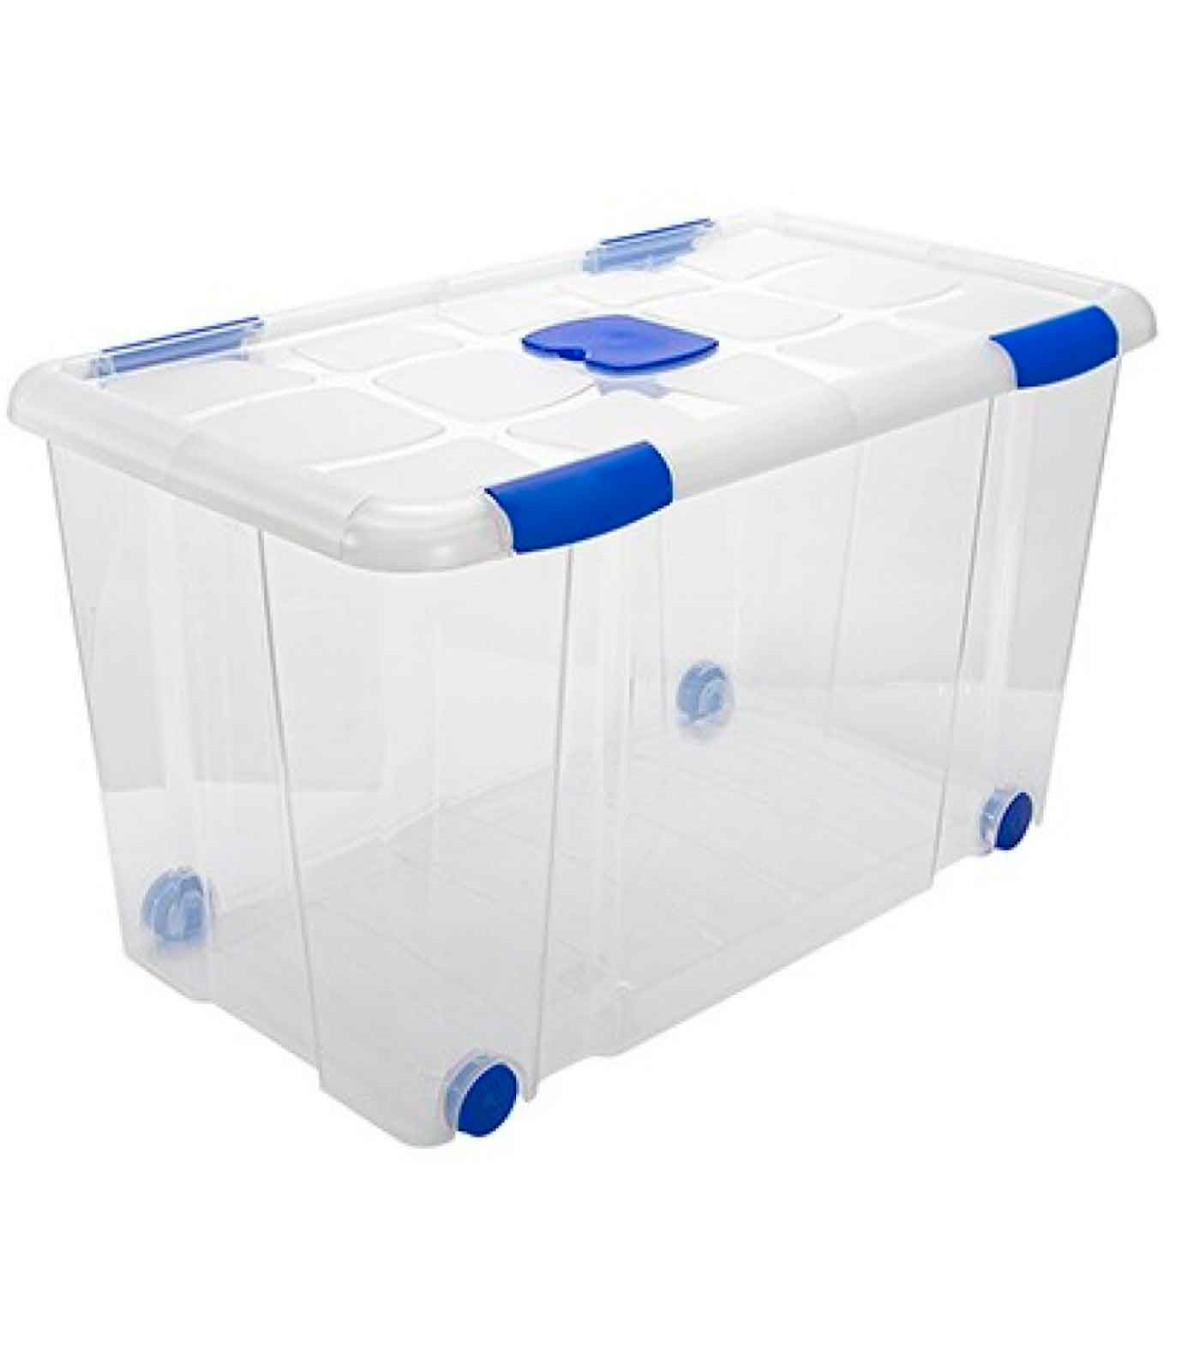 Caja de plástico nº12 transparente con ruedas de 41 x 73,2,x 41 cm,con  capacidad para 90 litros. Baúl con tapa para organizació